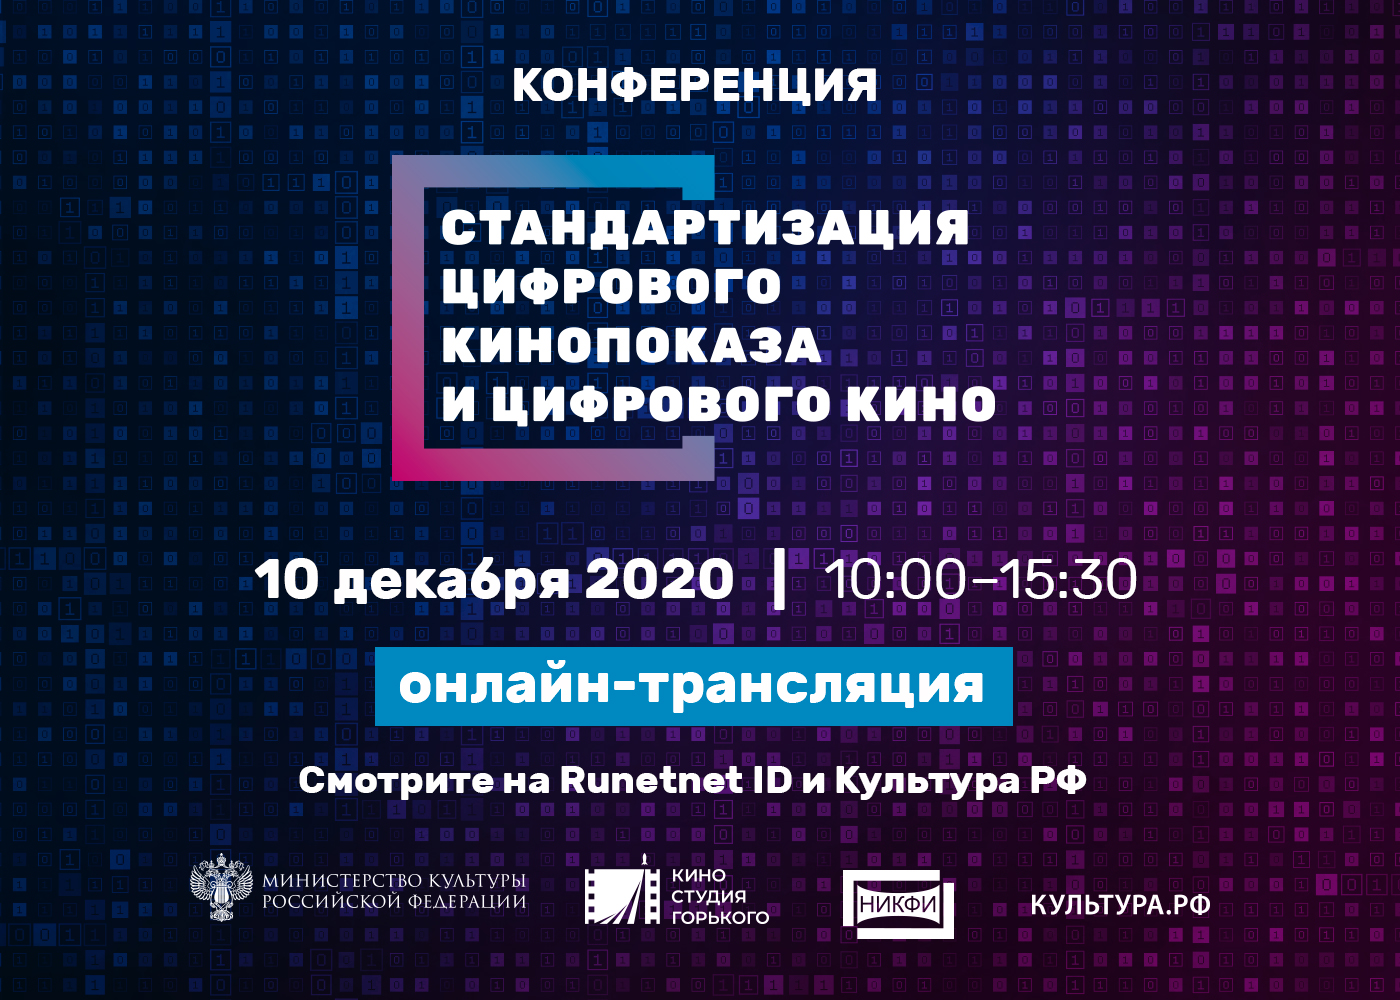 Цифровизацию киноотрасли обсудят на специальной конференции в Москве